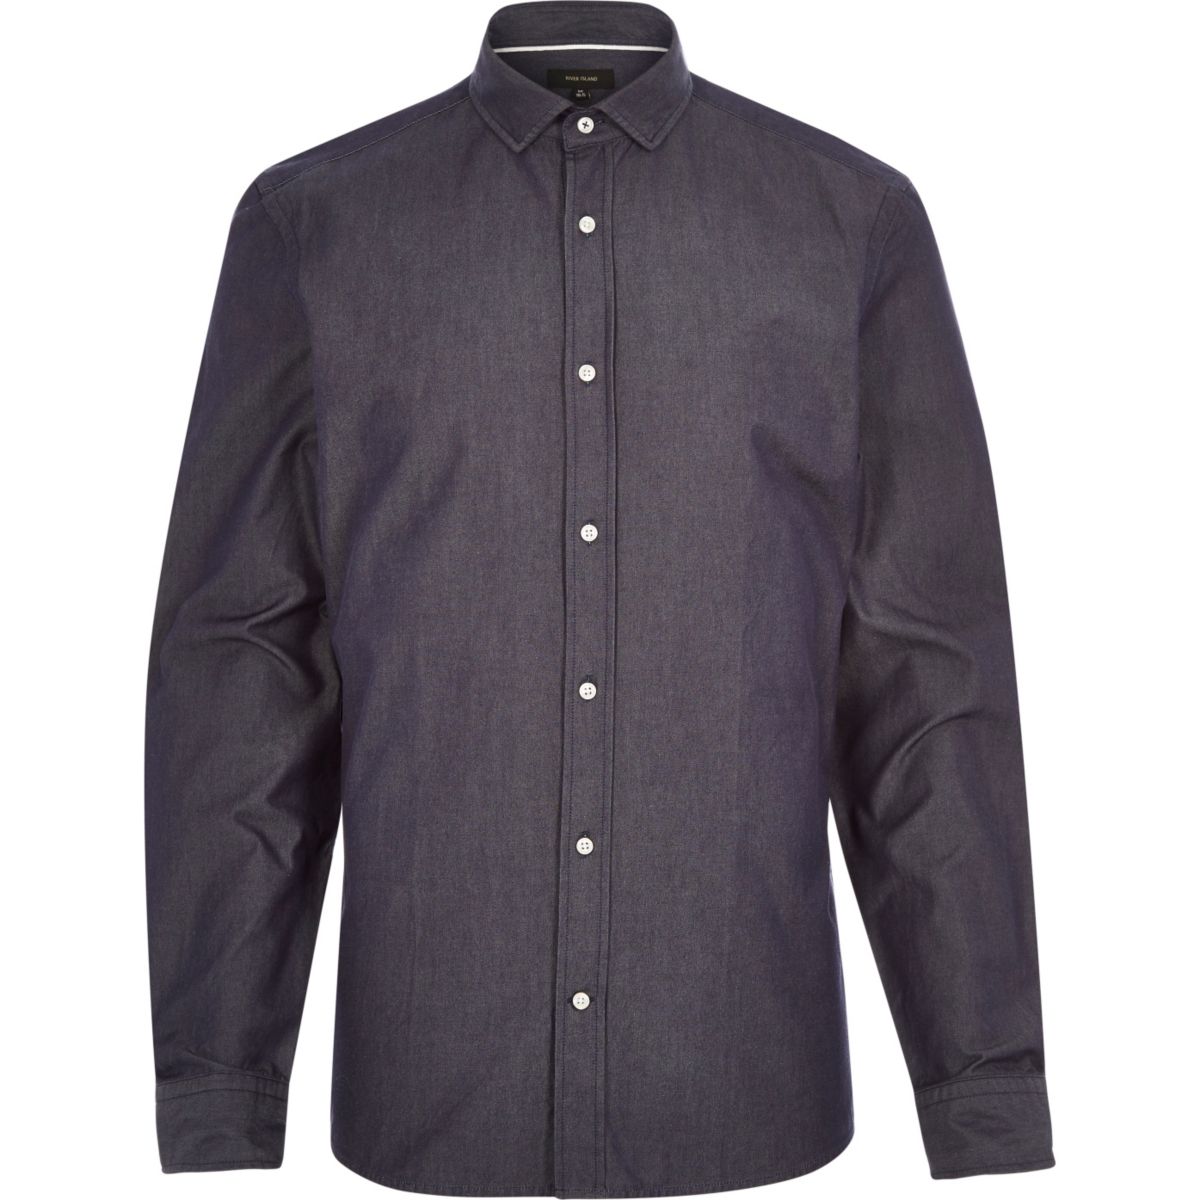 Navy dark denim long sleeve shirt - Shirts - Sale - men